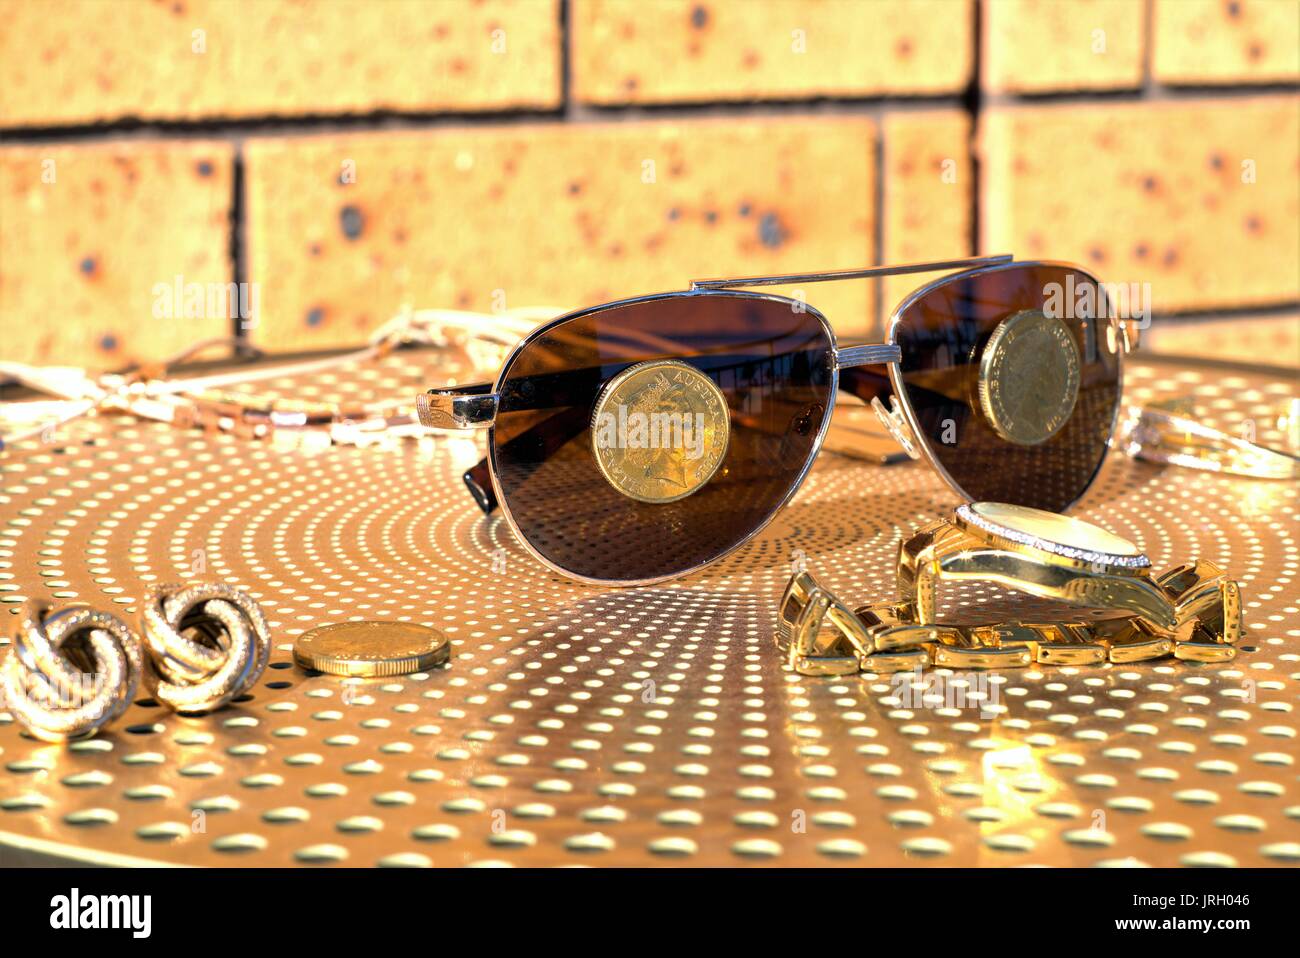 Australische Münzen auf eine Sonnenbrille. Australische 1 Dollar Münzen auf Sonnenbrillen, Gold Diamond Watch und anderen Gold Schmuck auf Tisch Stockfoto